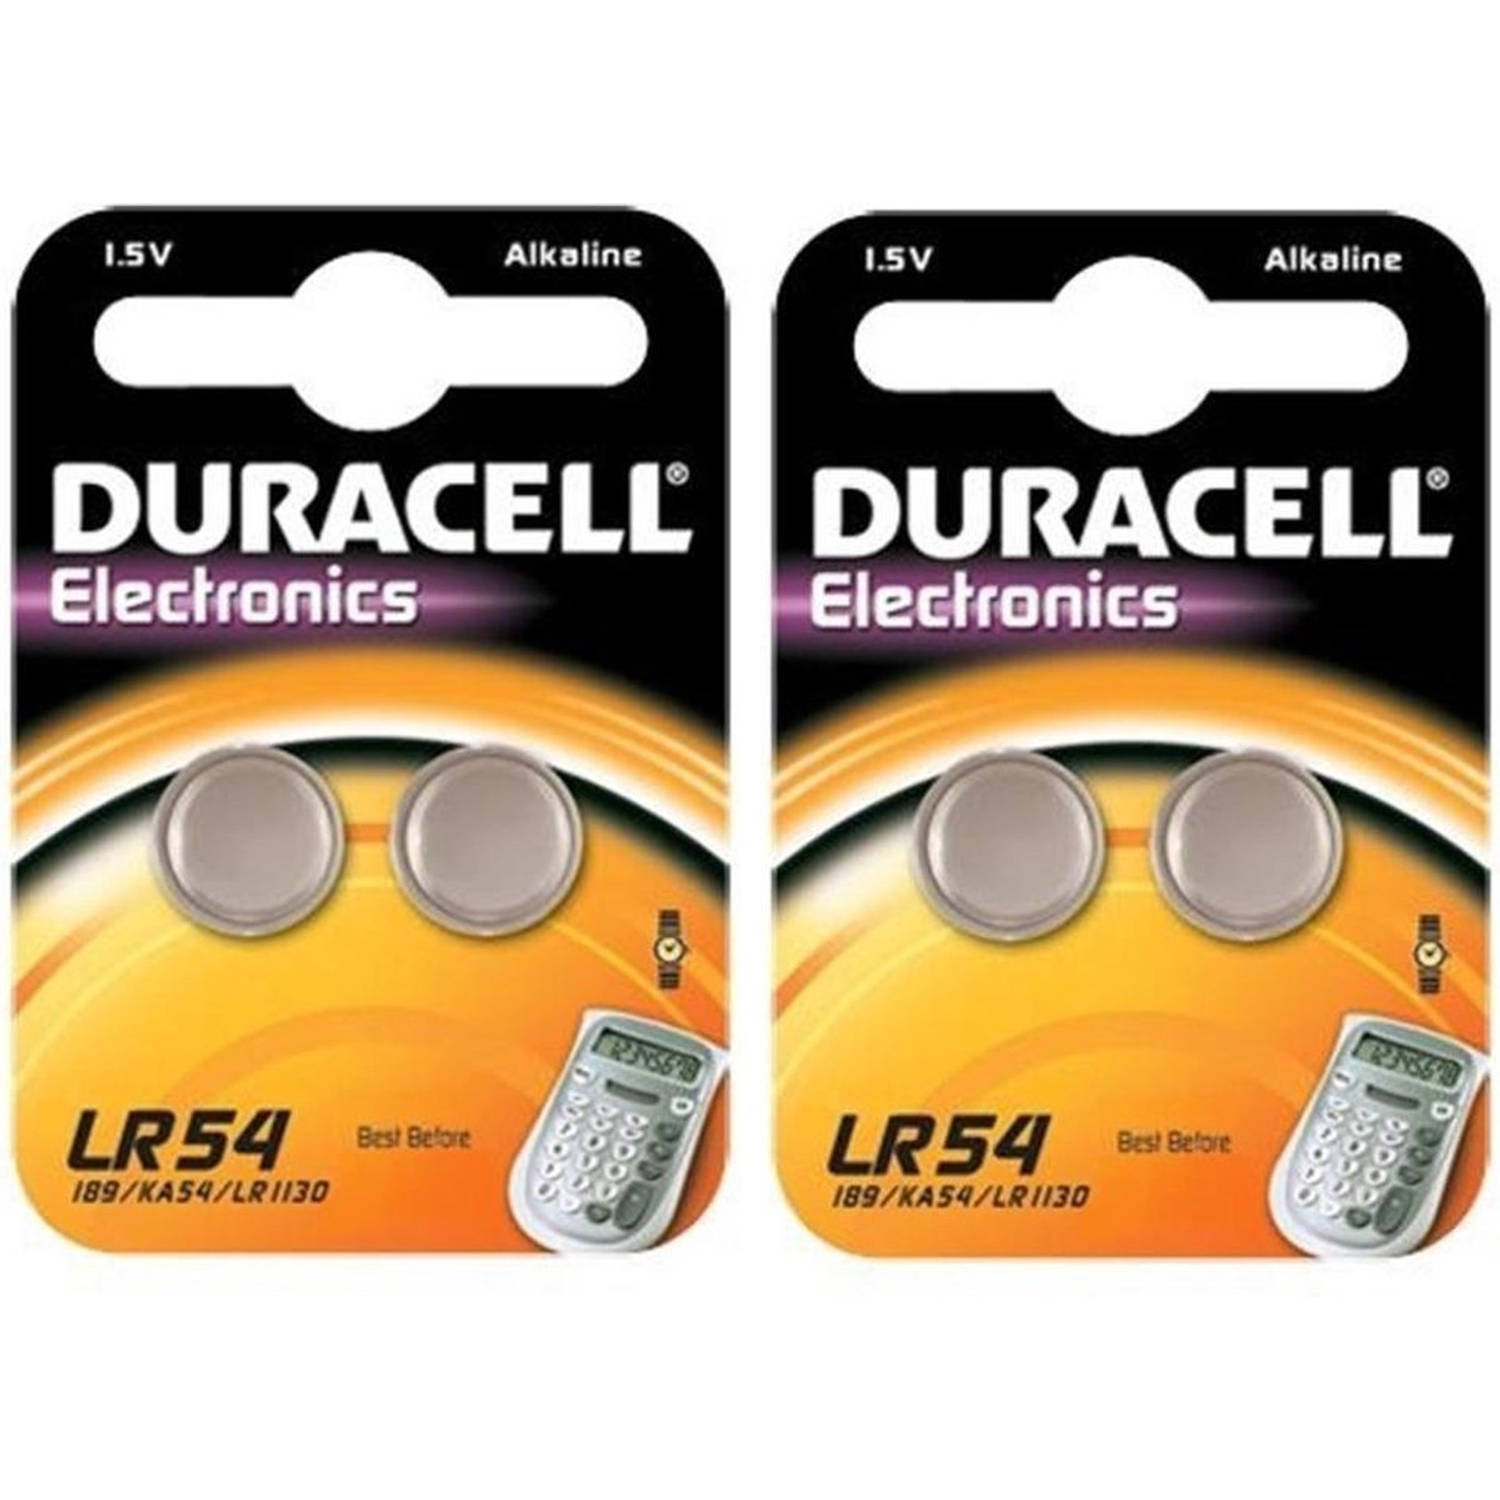 4 Stuks (2 Blisters a 2st) - Duracell G10 / LR54 / 189 / AG10 Alkaline knoopcel batterij